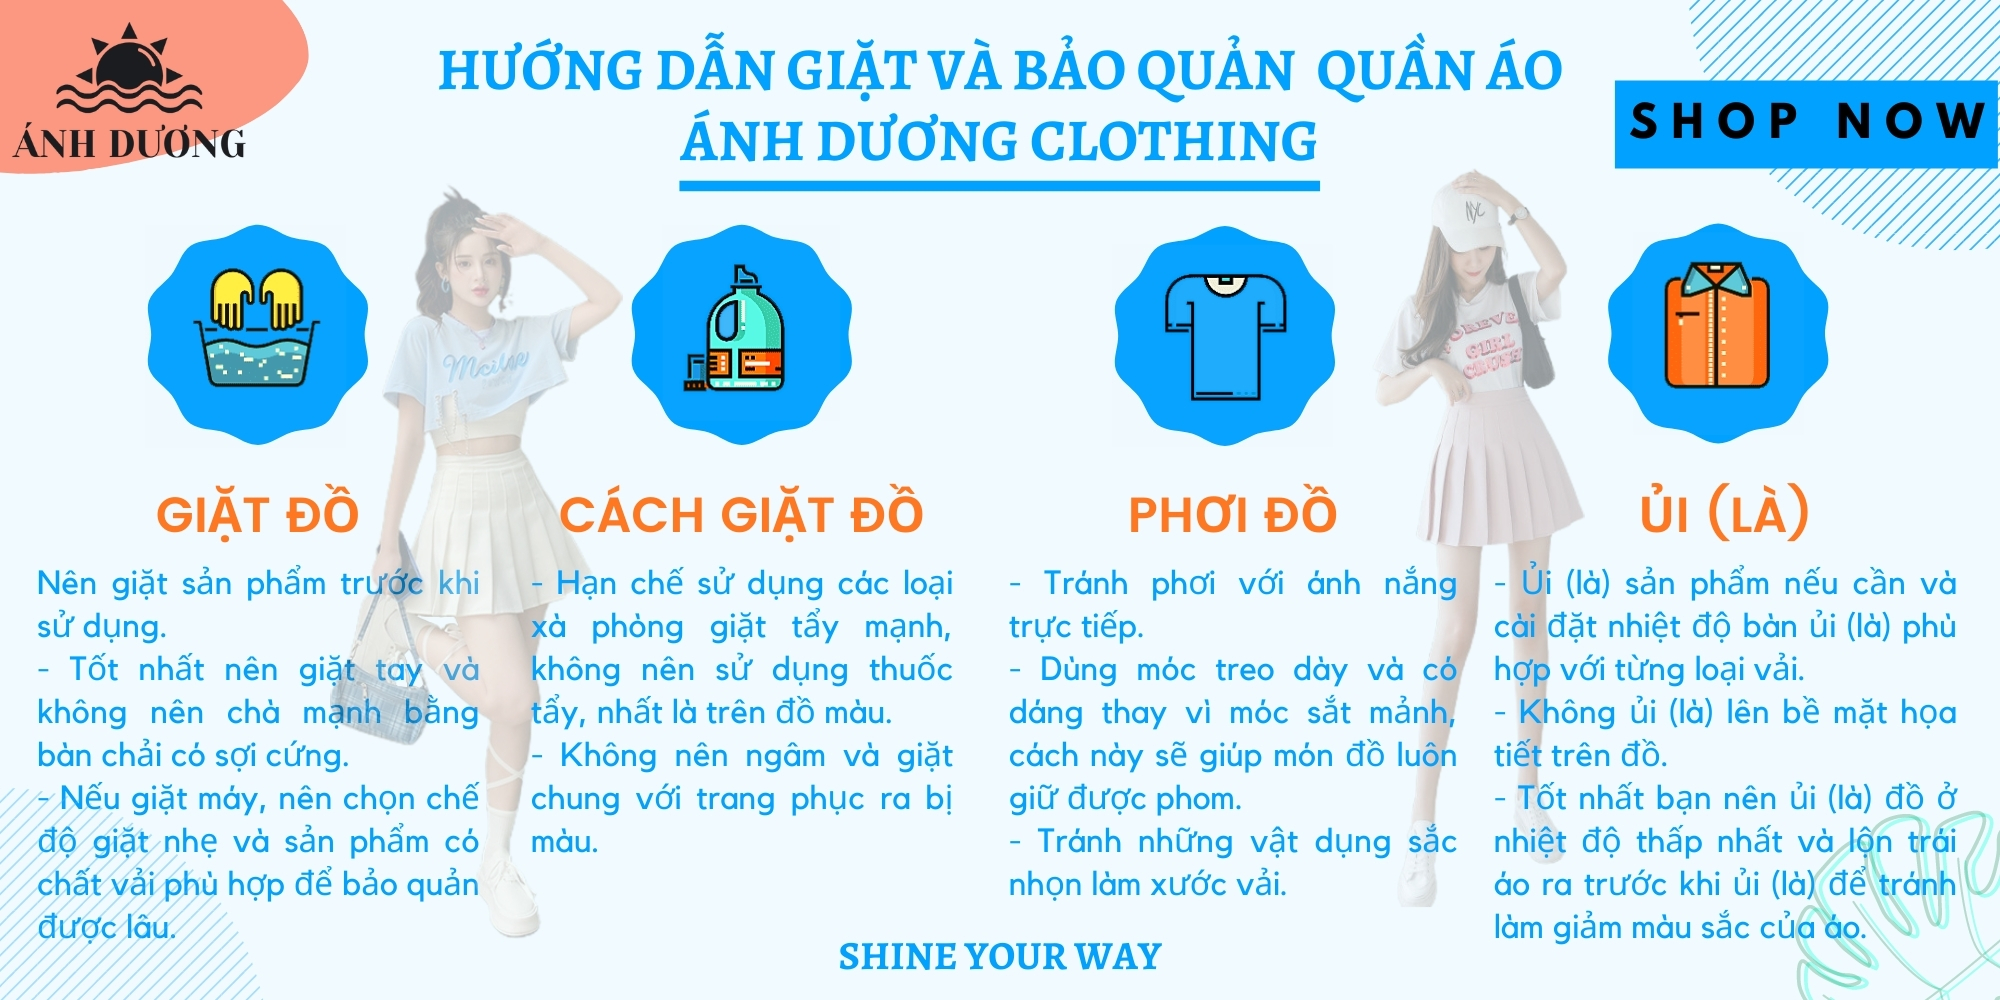 Ánh Dương Clothing